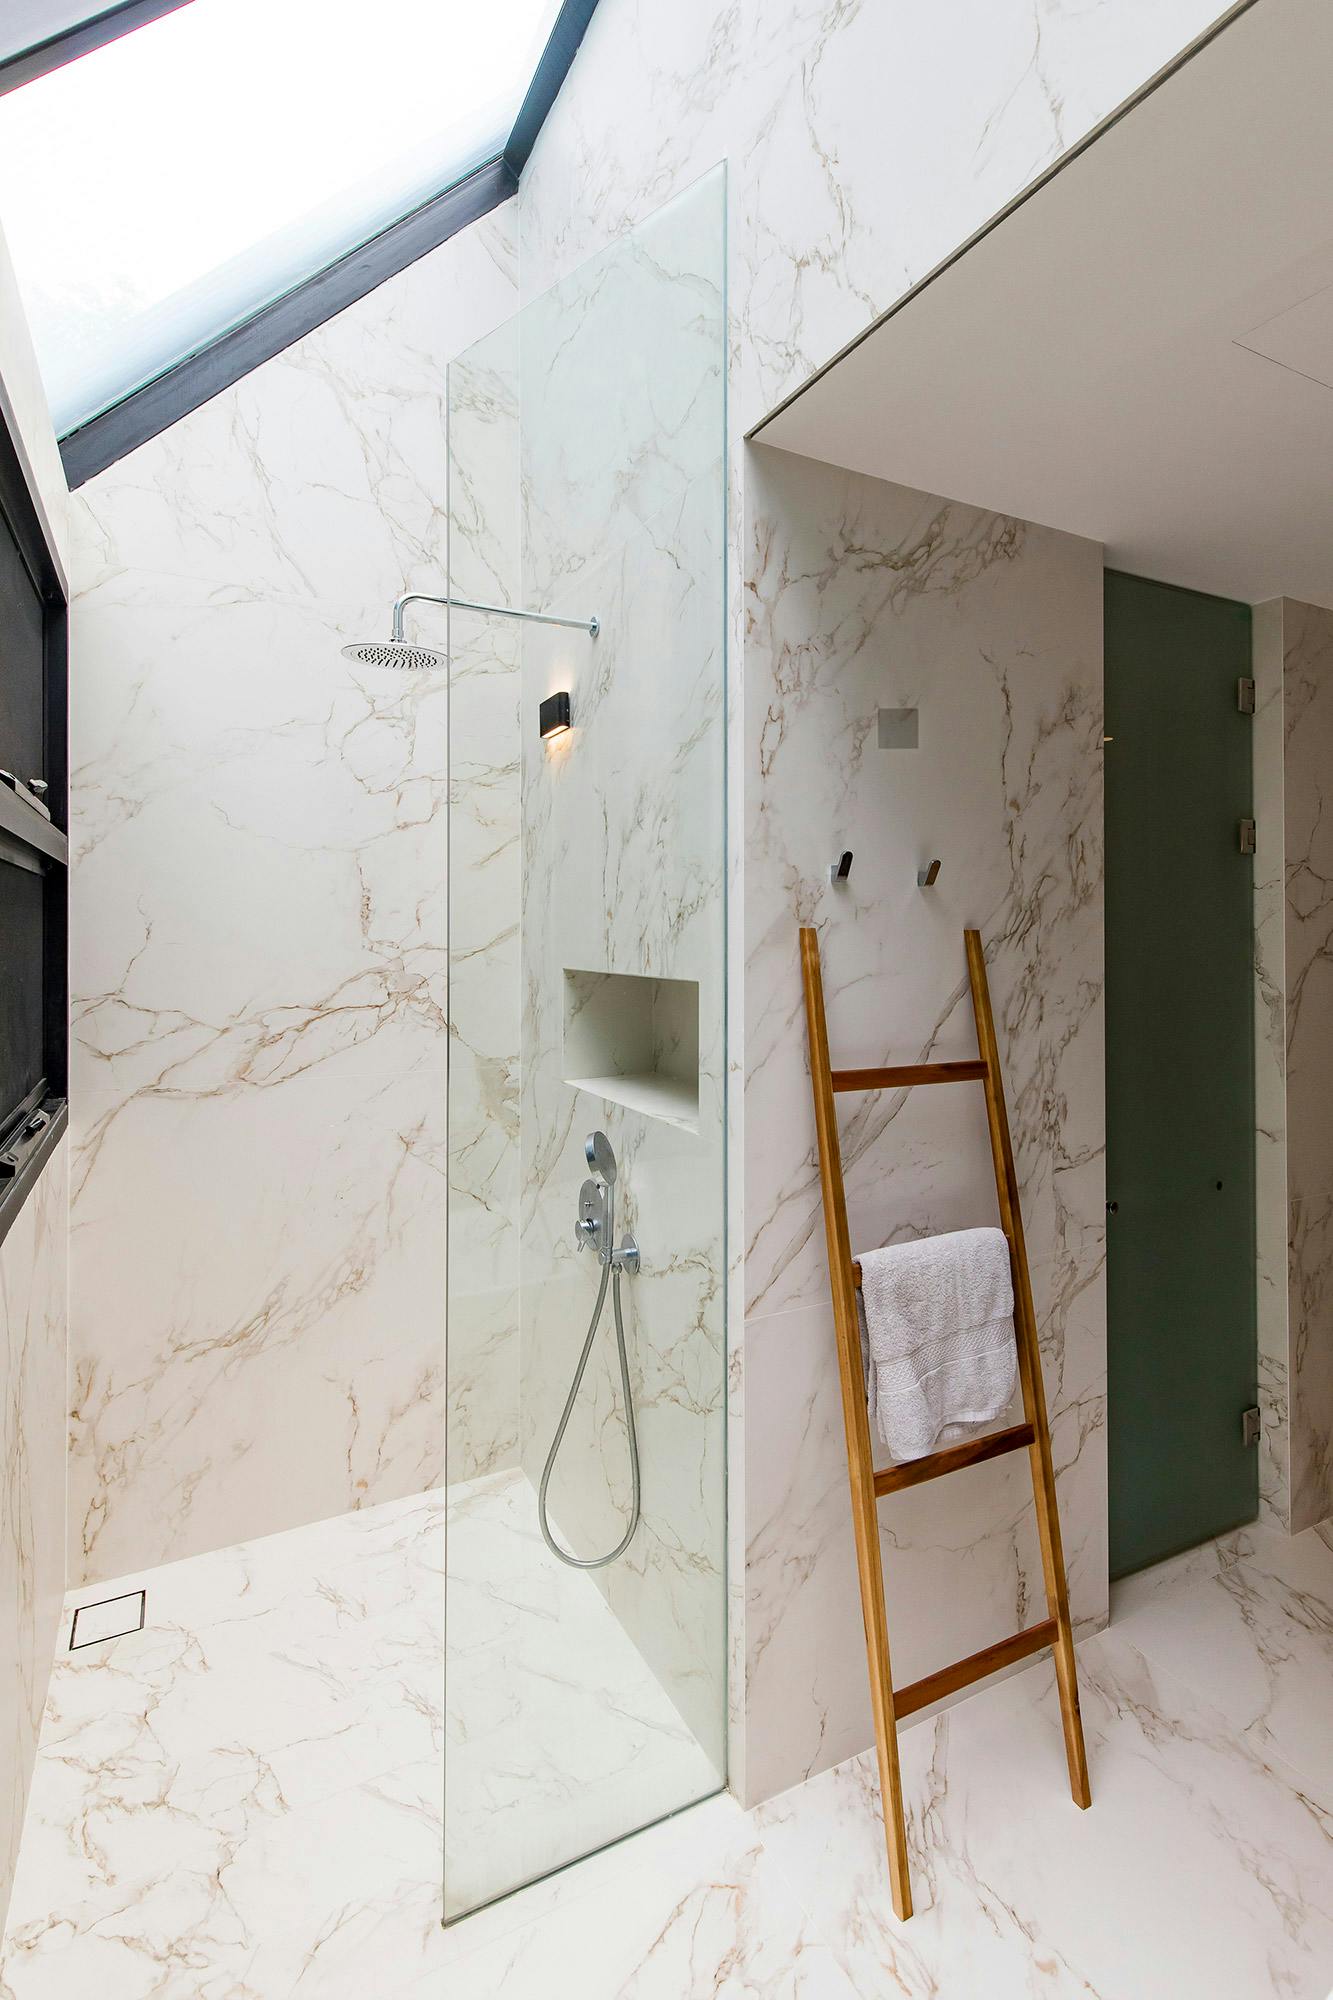 Numero immagine 53 della sezione corrente di DKTN, the material of choice for easy-to-clean, UV and humidity resistant surfaces in a modern villa di Cosentino Italia